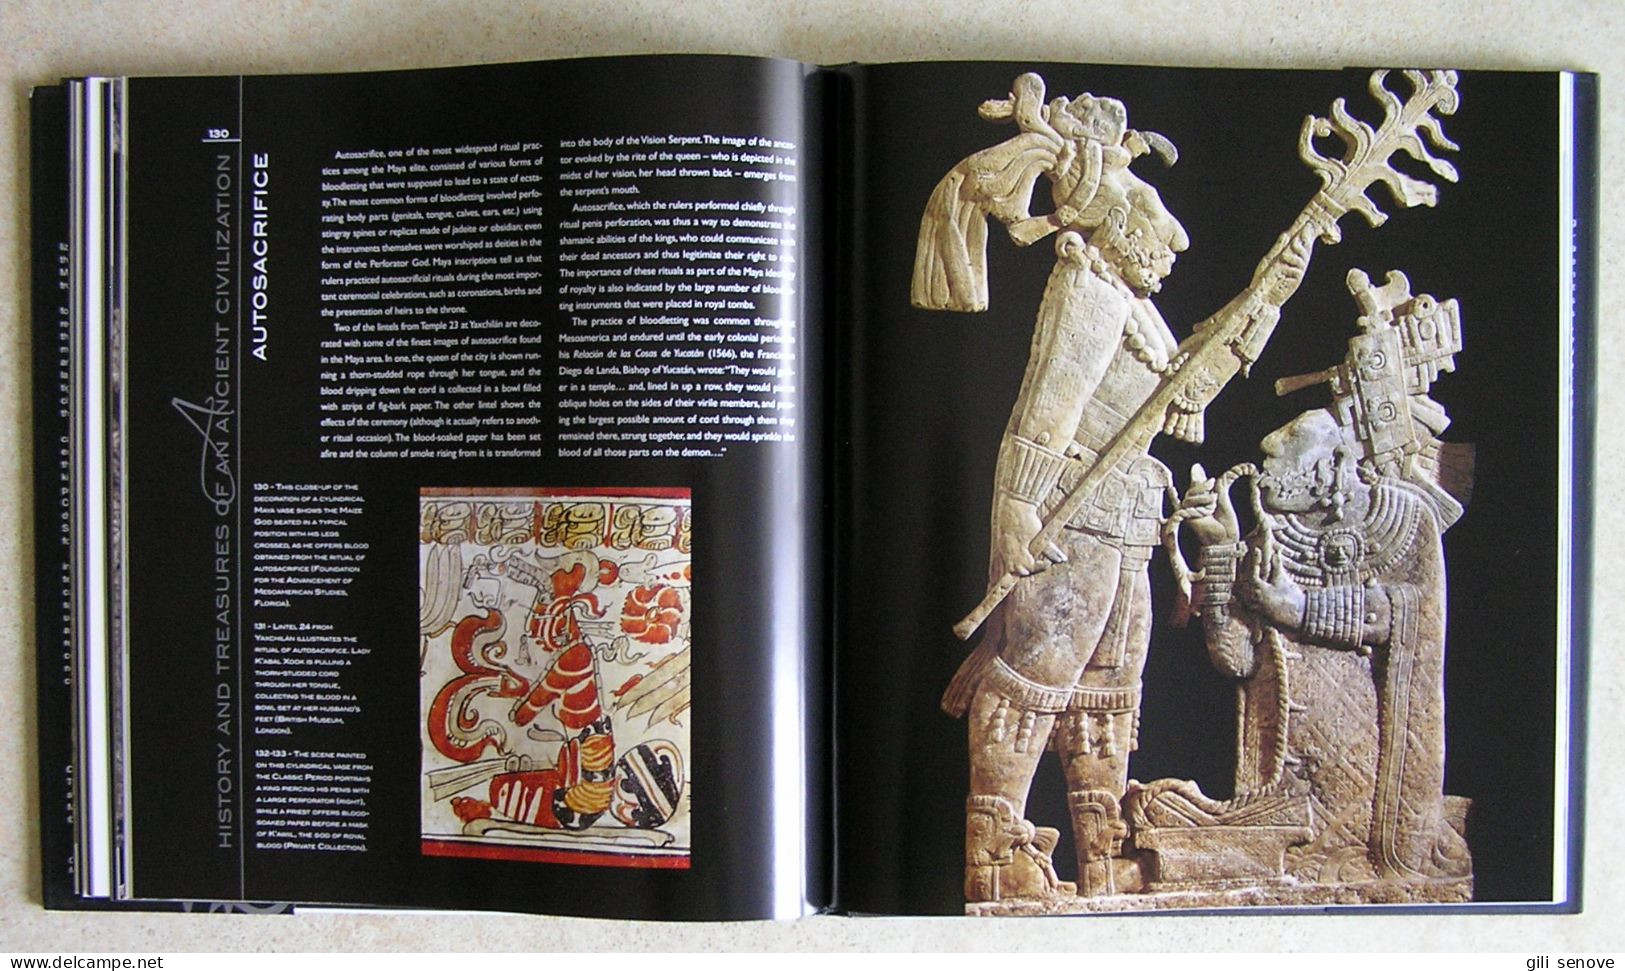 The Maya: History and Treasures of an Ancient Civilization 2006